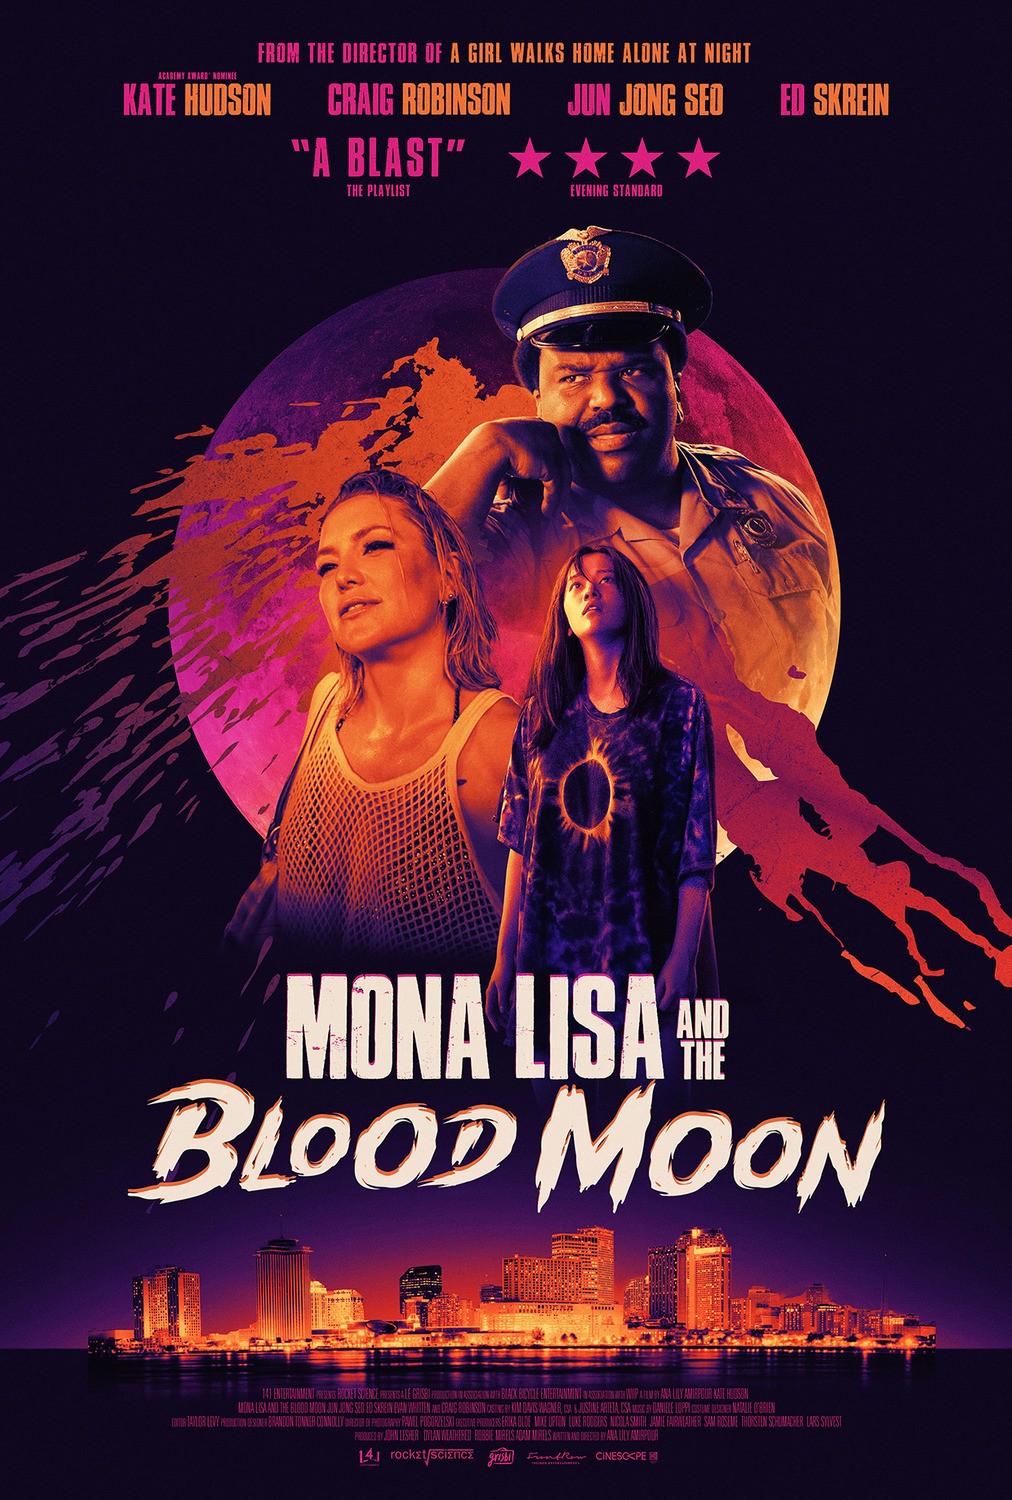 Мона Лиза и кровавая луна / Mona Lisa and the Blood Moon (2021) отзывы. Рецензии. Новости кино. Актеры фильма Мона Лиза и кровавая луна. Отзывы о фильме Мона Лиза и кровавая луна